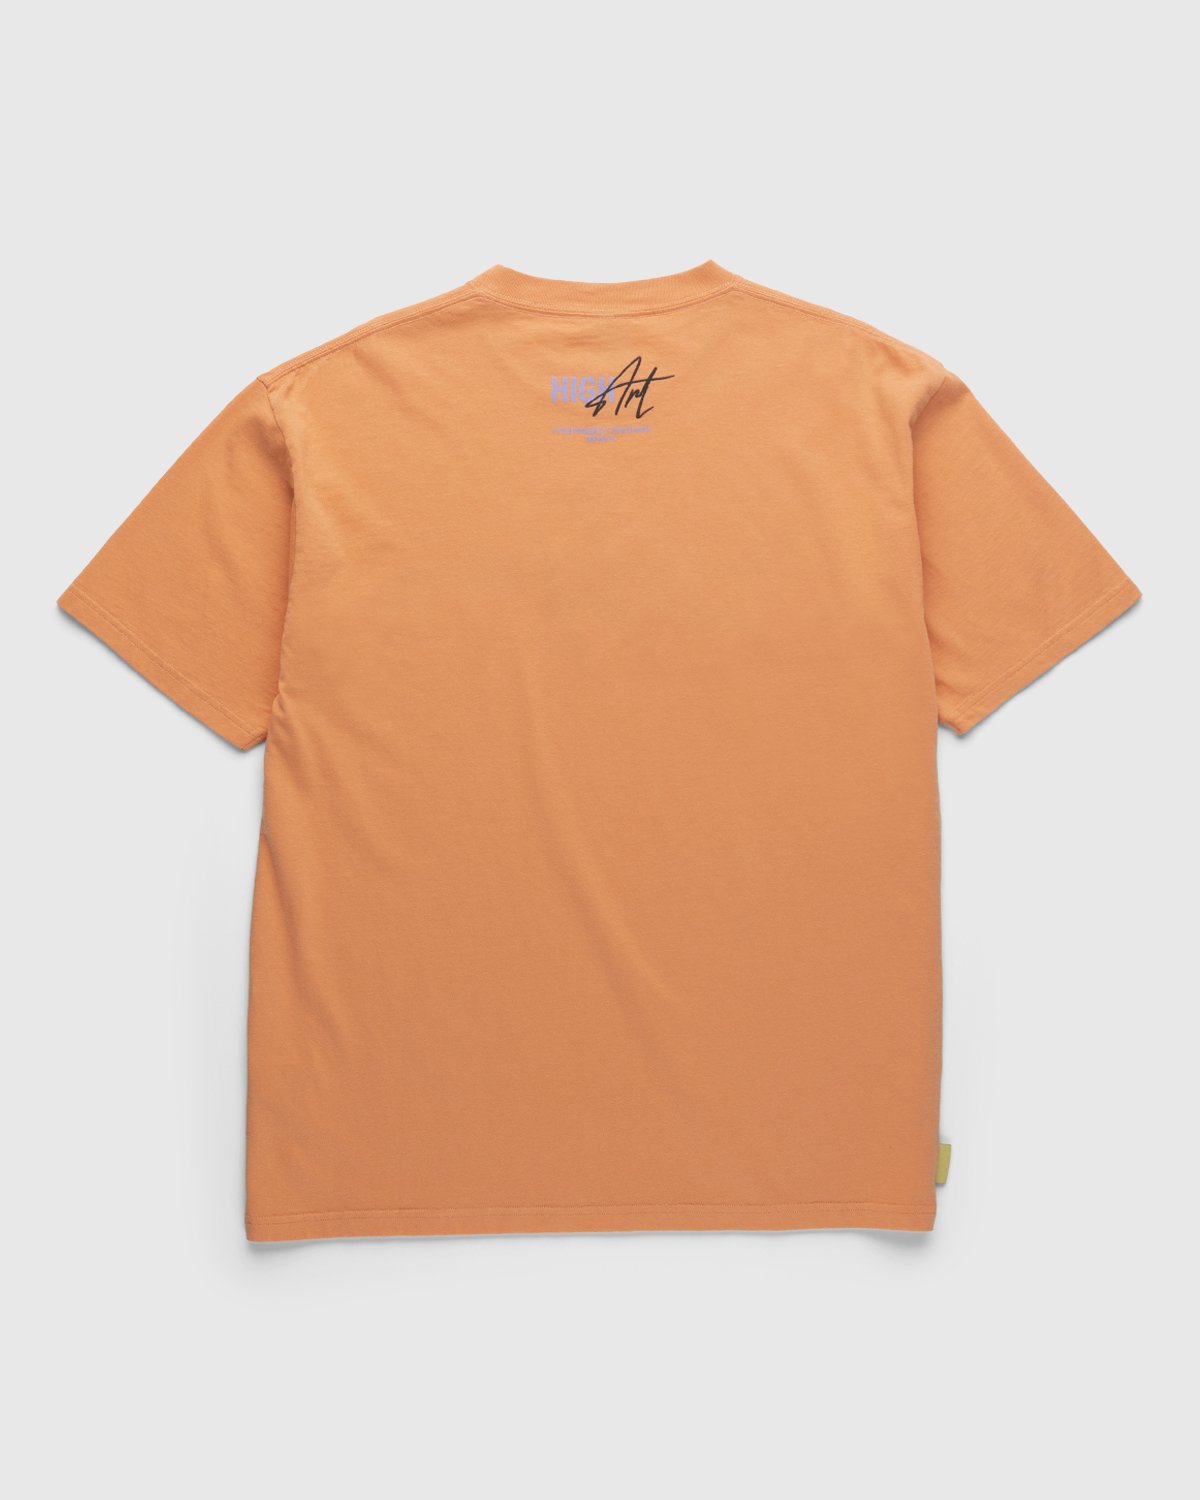 Highsnobiety - HIGHArt T-Shirt Miami Orange - Clothing - Orange - Image 2